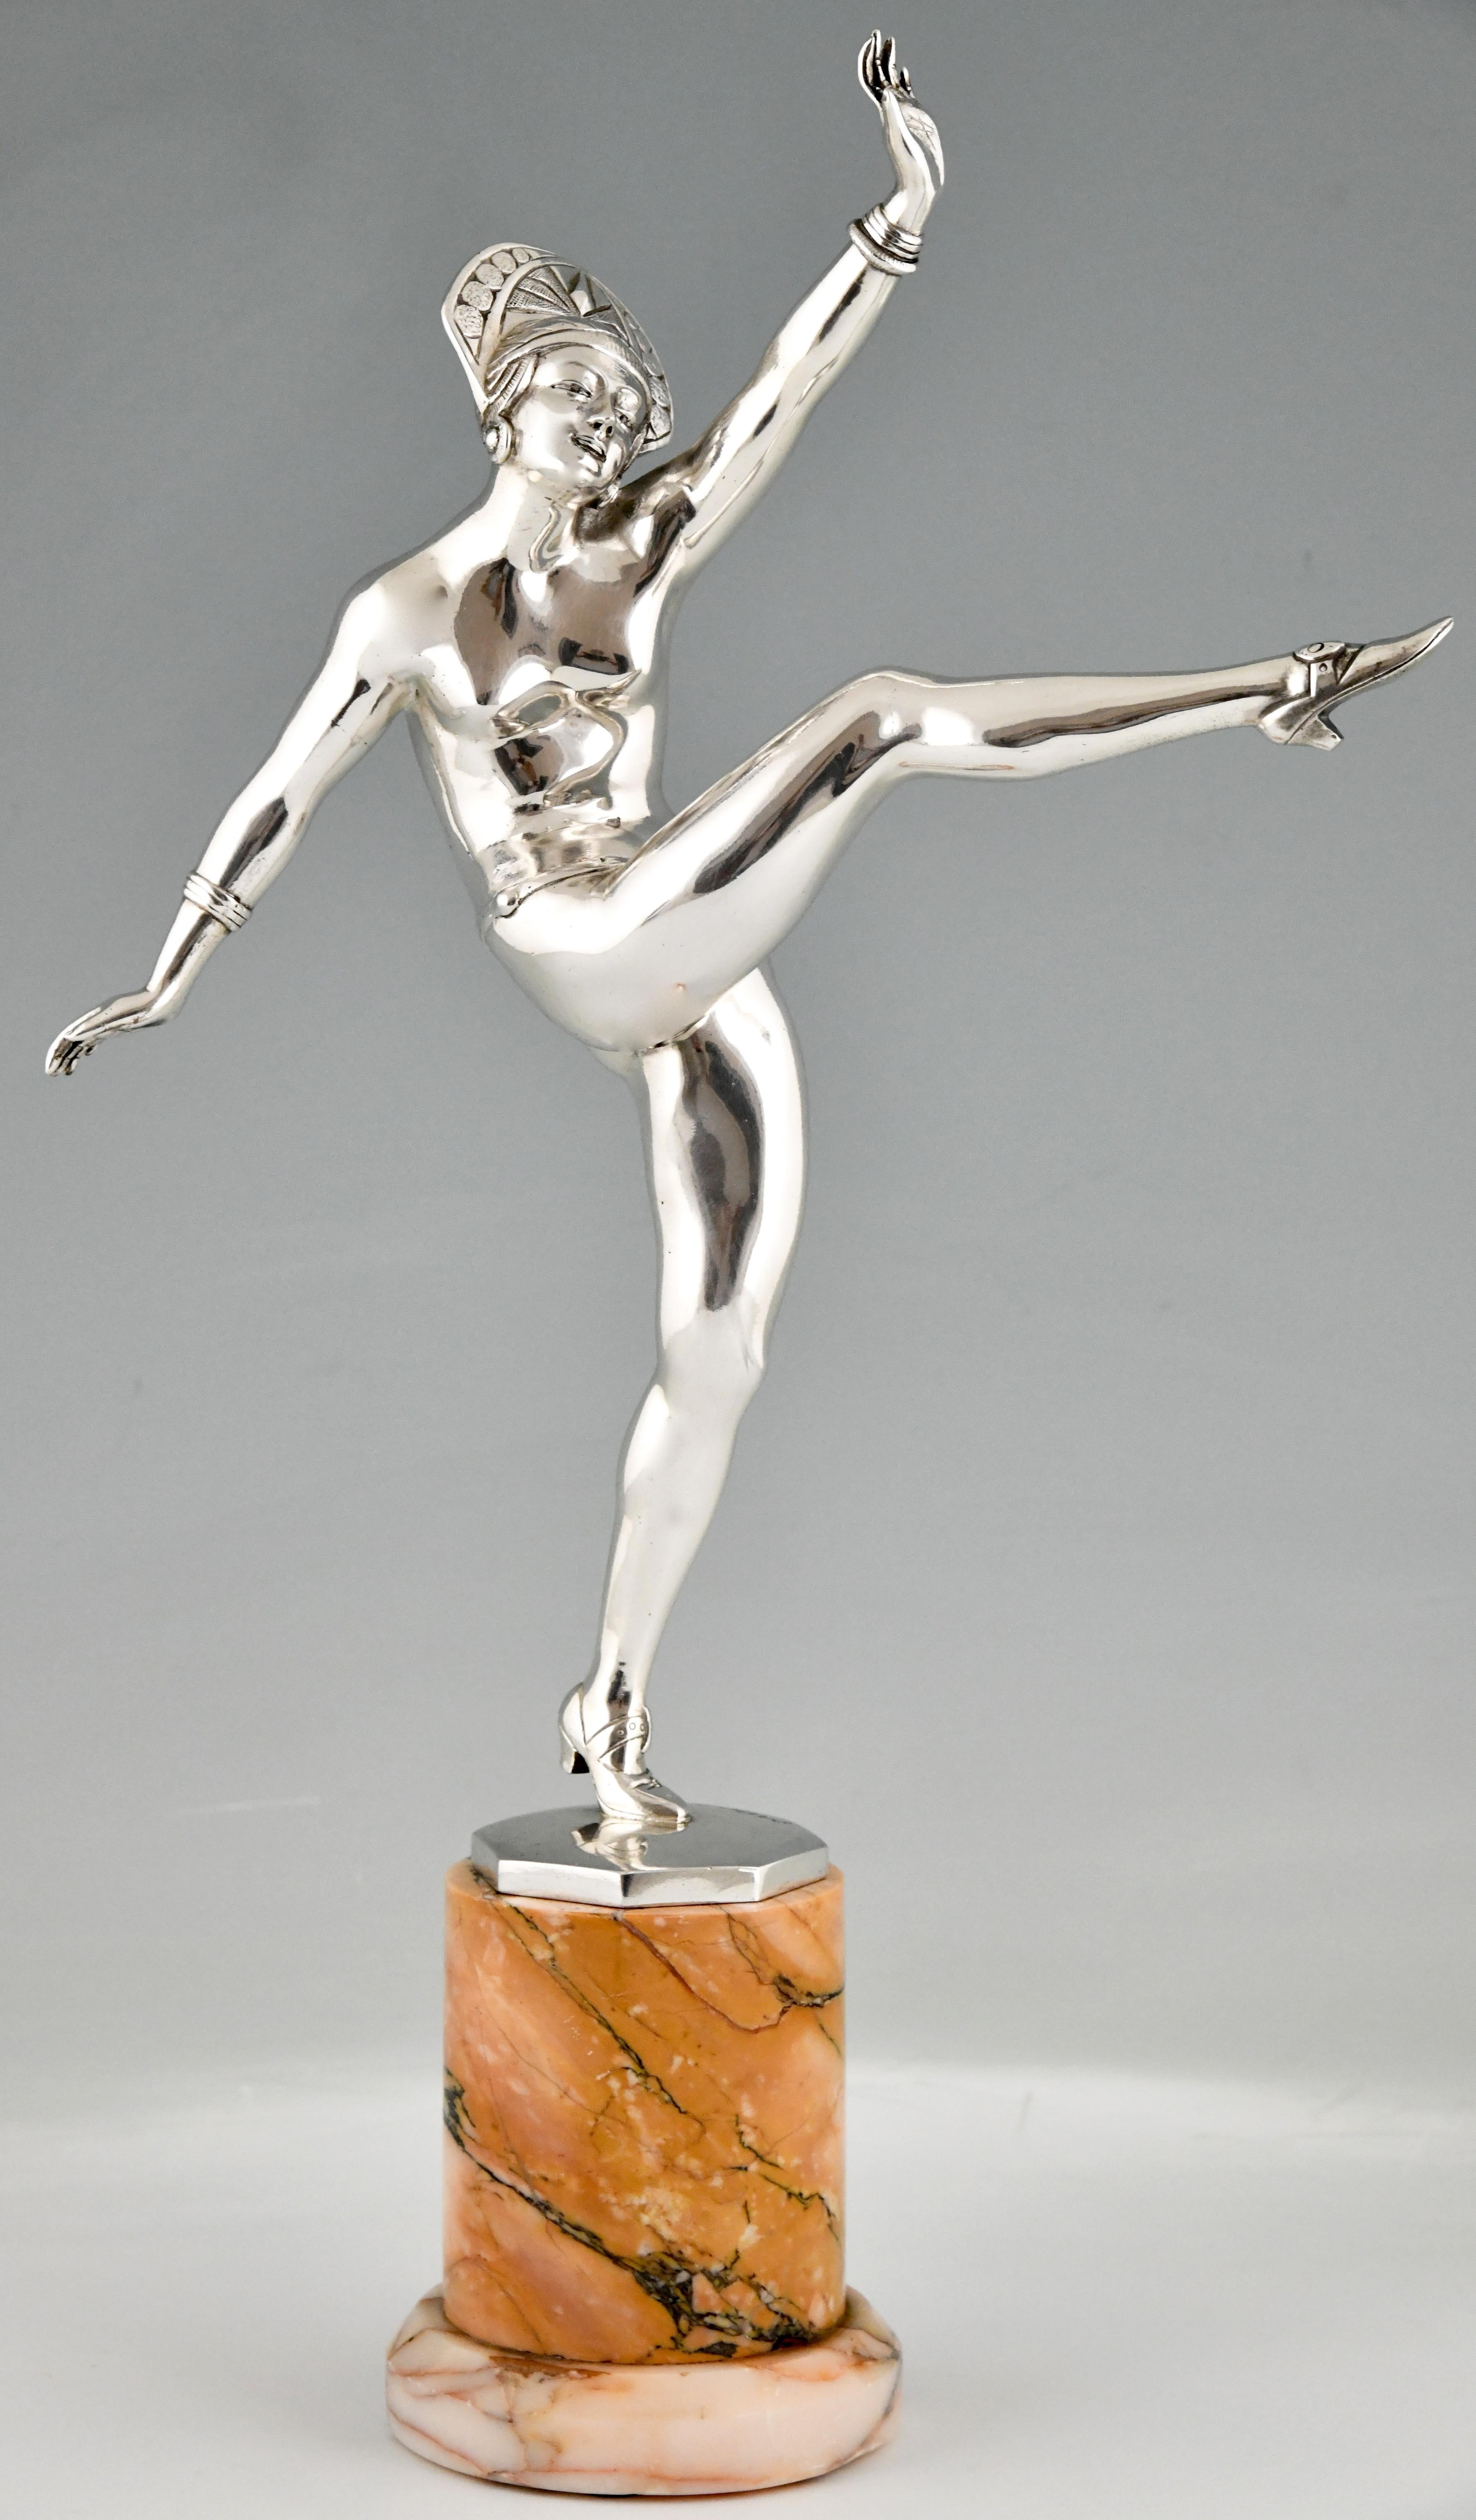 Art Deco versilberte Bronze Skulptur nackte Tänzerin.
High Kicker von J. P. Morante.
Versilberte Bronze auf einem runden Marmorsockel.
Frankreich 1925.
Dieses Modell ist illustriert in:
Bronzen, Bildhauer und Stifter von H. Berman, Abage.
Art